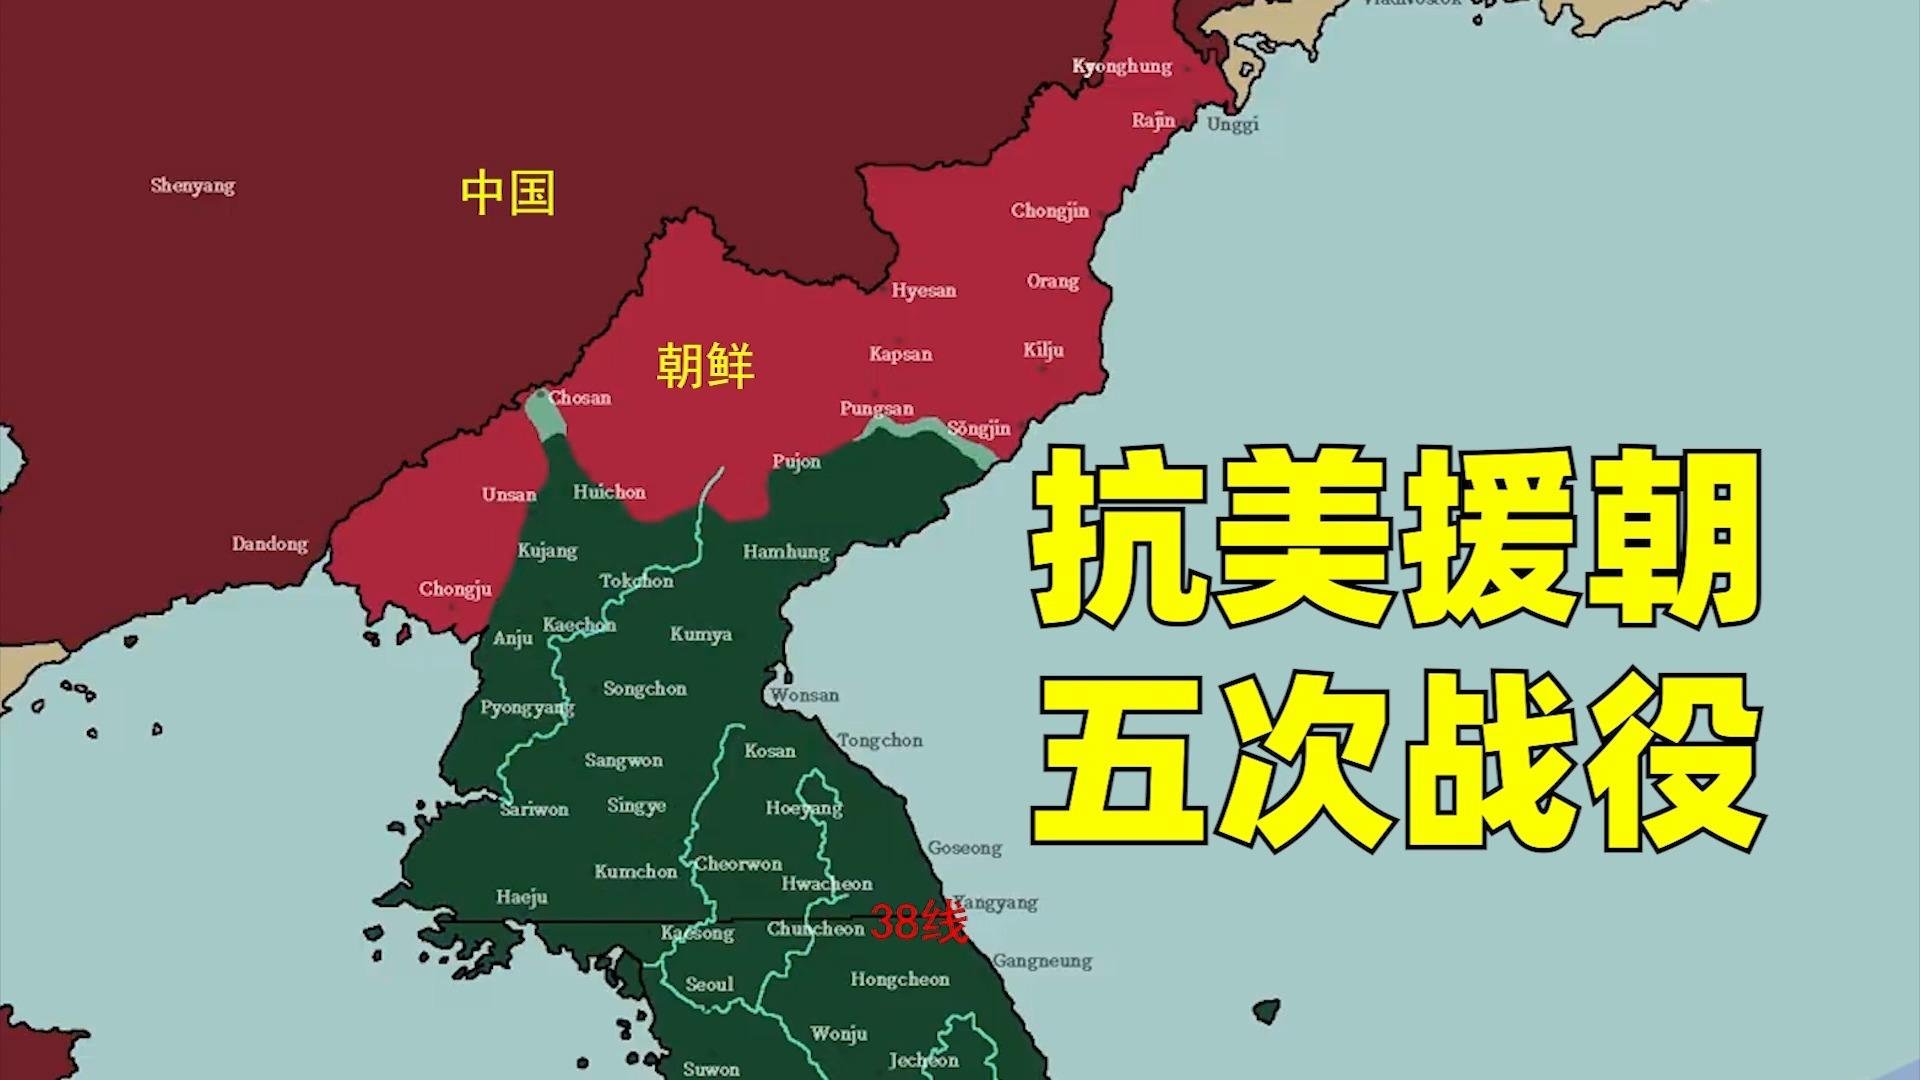 抗美援朝地图朝鲜图片